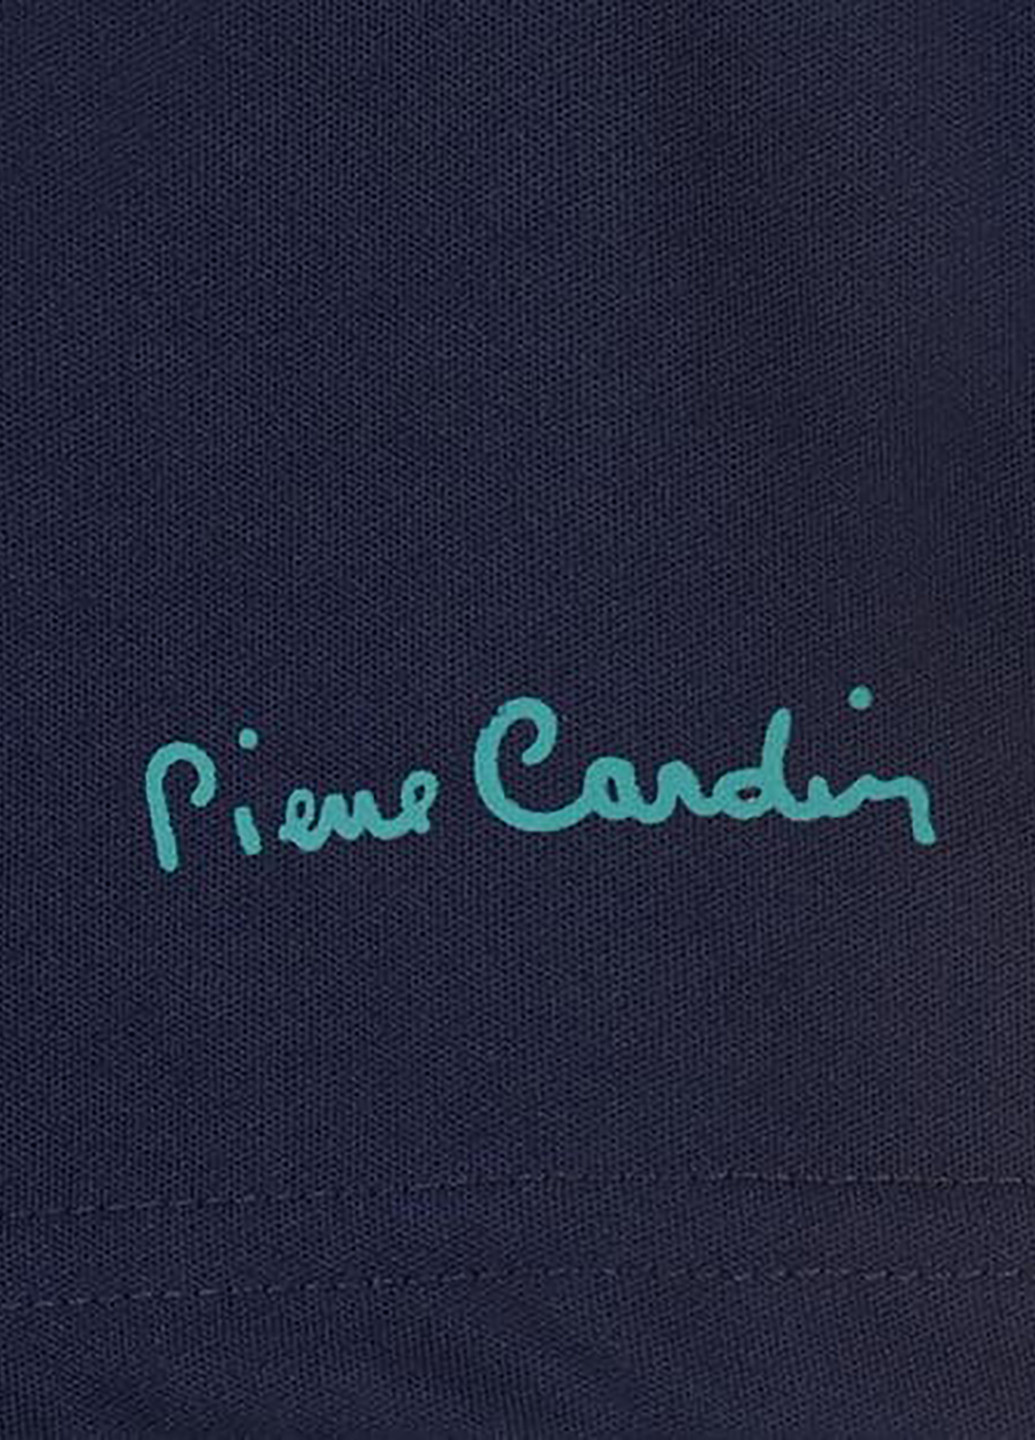 Темно-синяя футболка-поло для мужчин Pierre Cardin с геометрическим узором